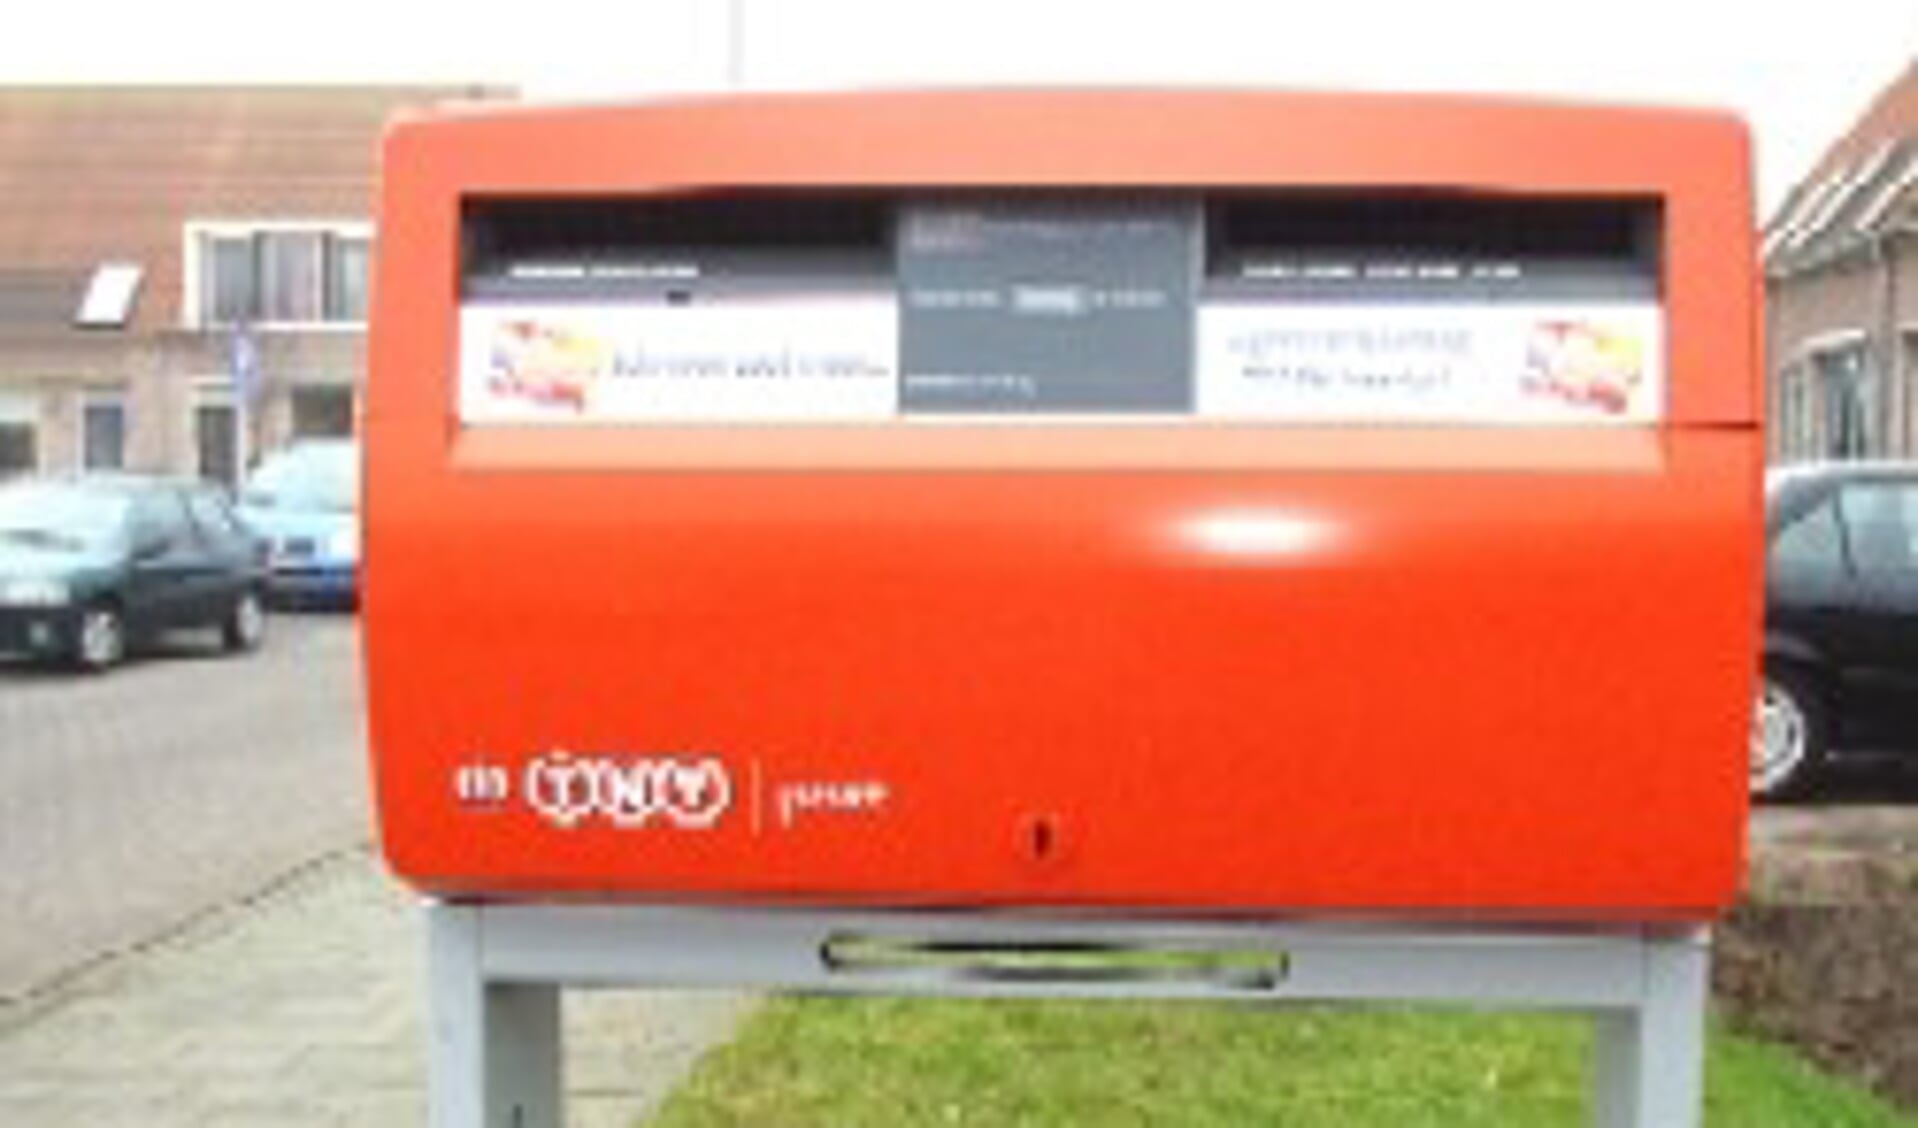 Mijlpaal vervoer Disciplinair Rode brievenbus verdwijnt ook uit Texelse straatbeeld